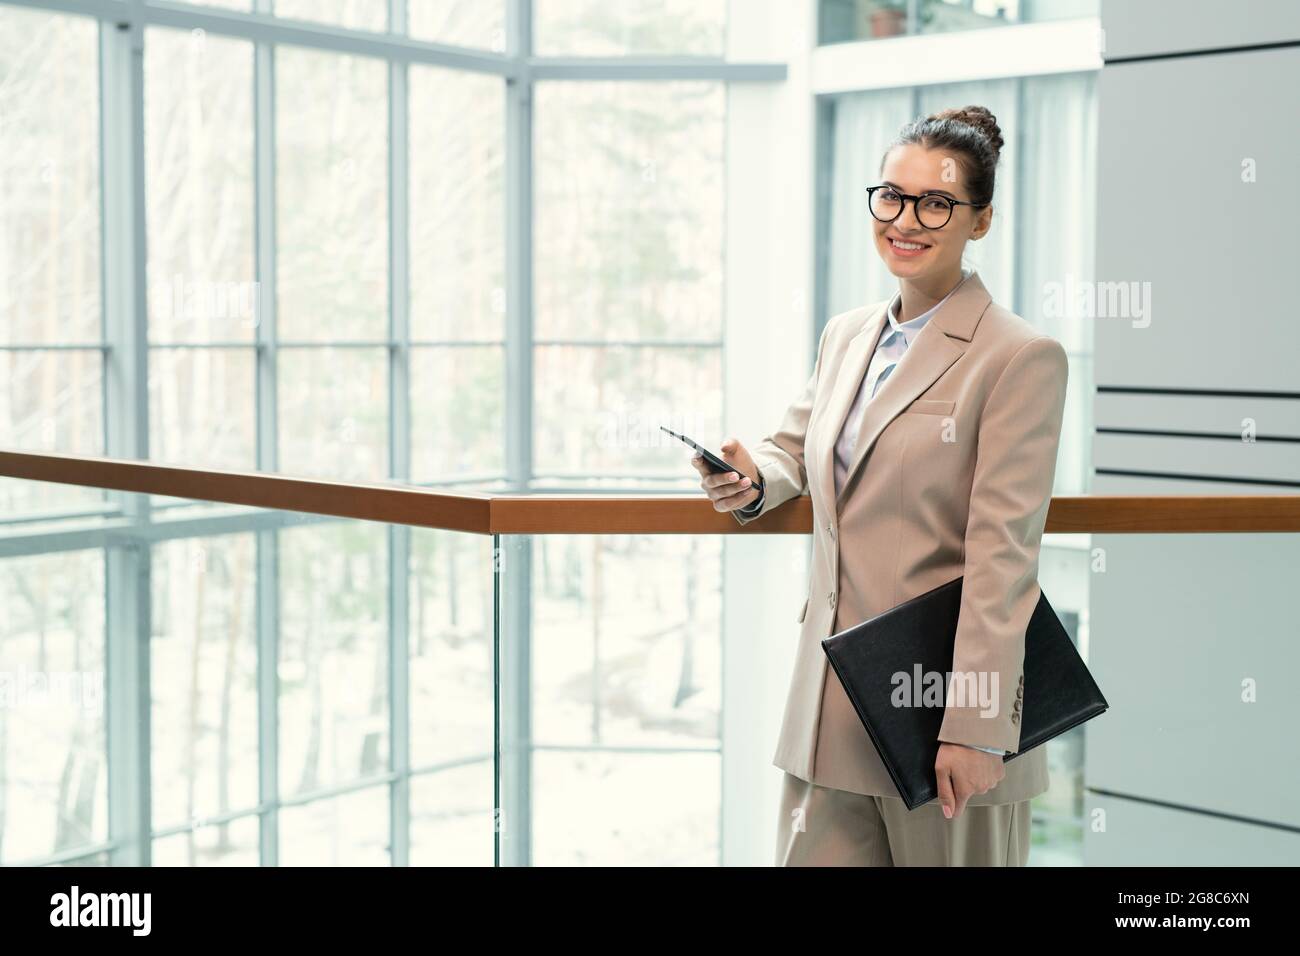 Porträt einer jungen eleganten Geschäftsfrau in Anzug lächelnd auf die Kamera, während sie auf dem Büroflur mit Ordner stand und ihr Mobiltelefon benutzte Stockfoto